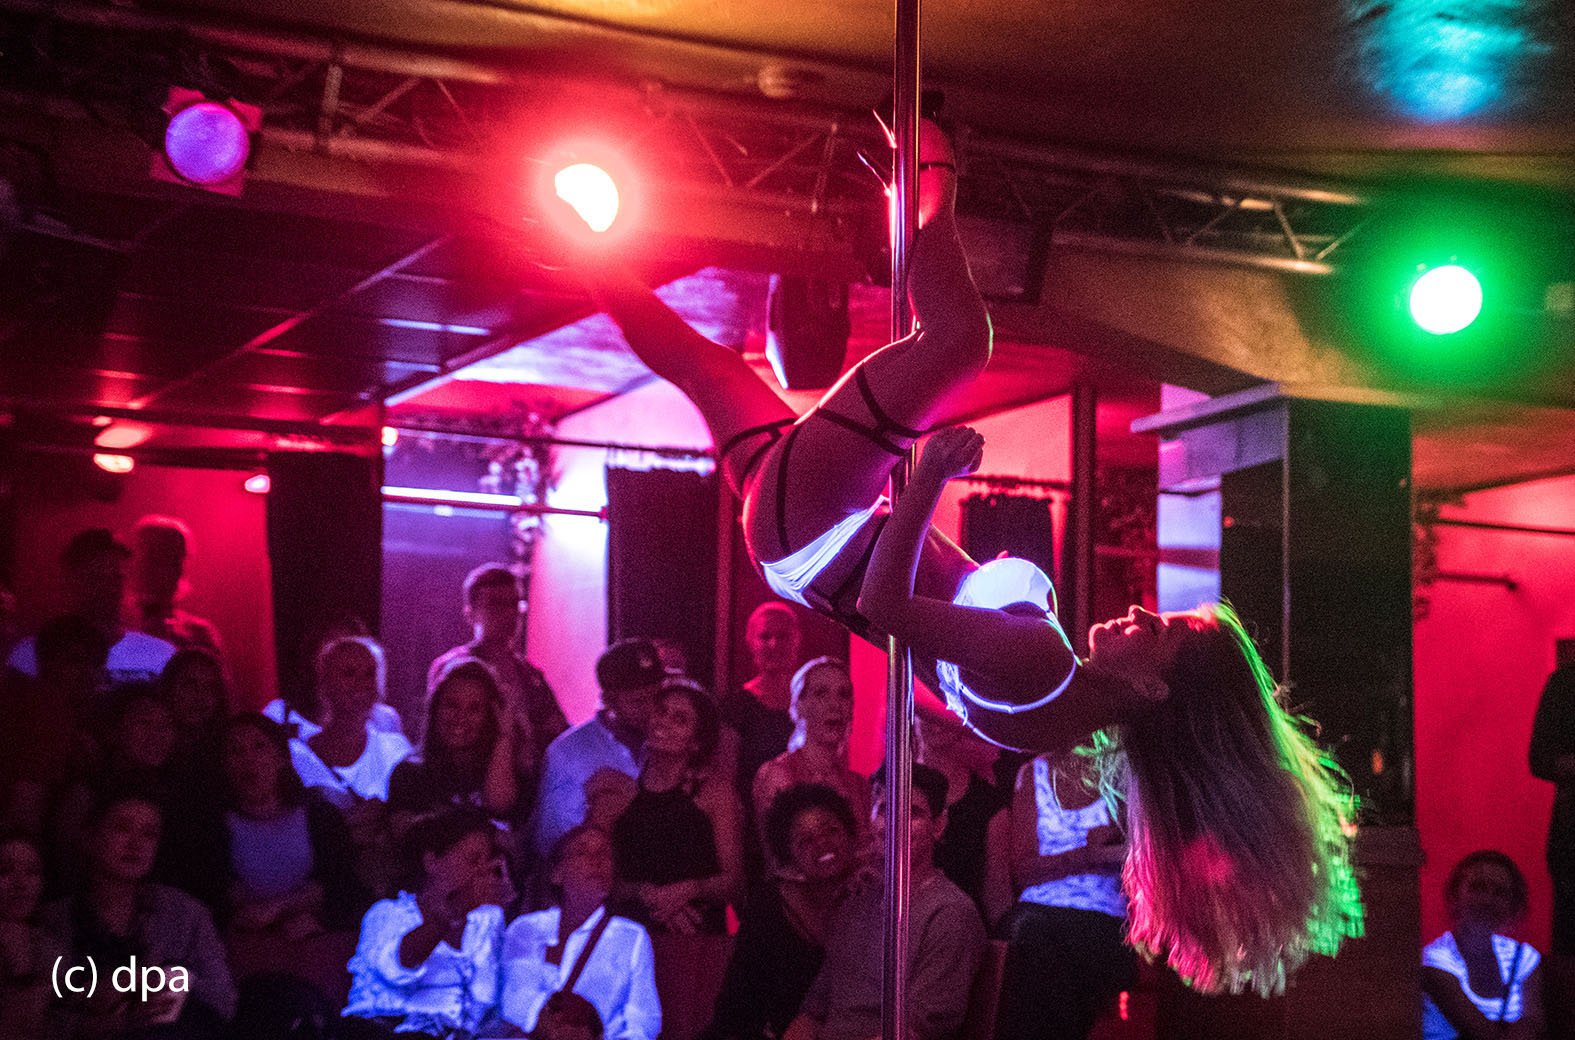 Tänzerin "Chantal" absolviert ihren Auftritt im "Pure Platinum" während der "Bahnhofsviertelnacht" im Frankfurter Rotlichtbezirk. Die Bahnhofsviertelnacht zählt für viele Rotlichtetablissements zu den umsatzstärksten Tagen des Jahres. 